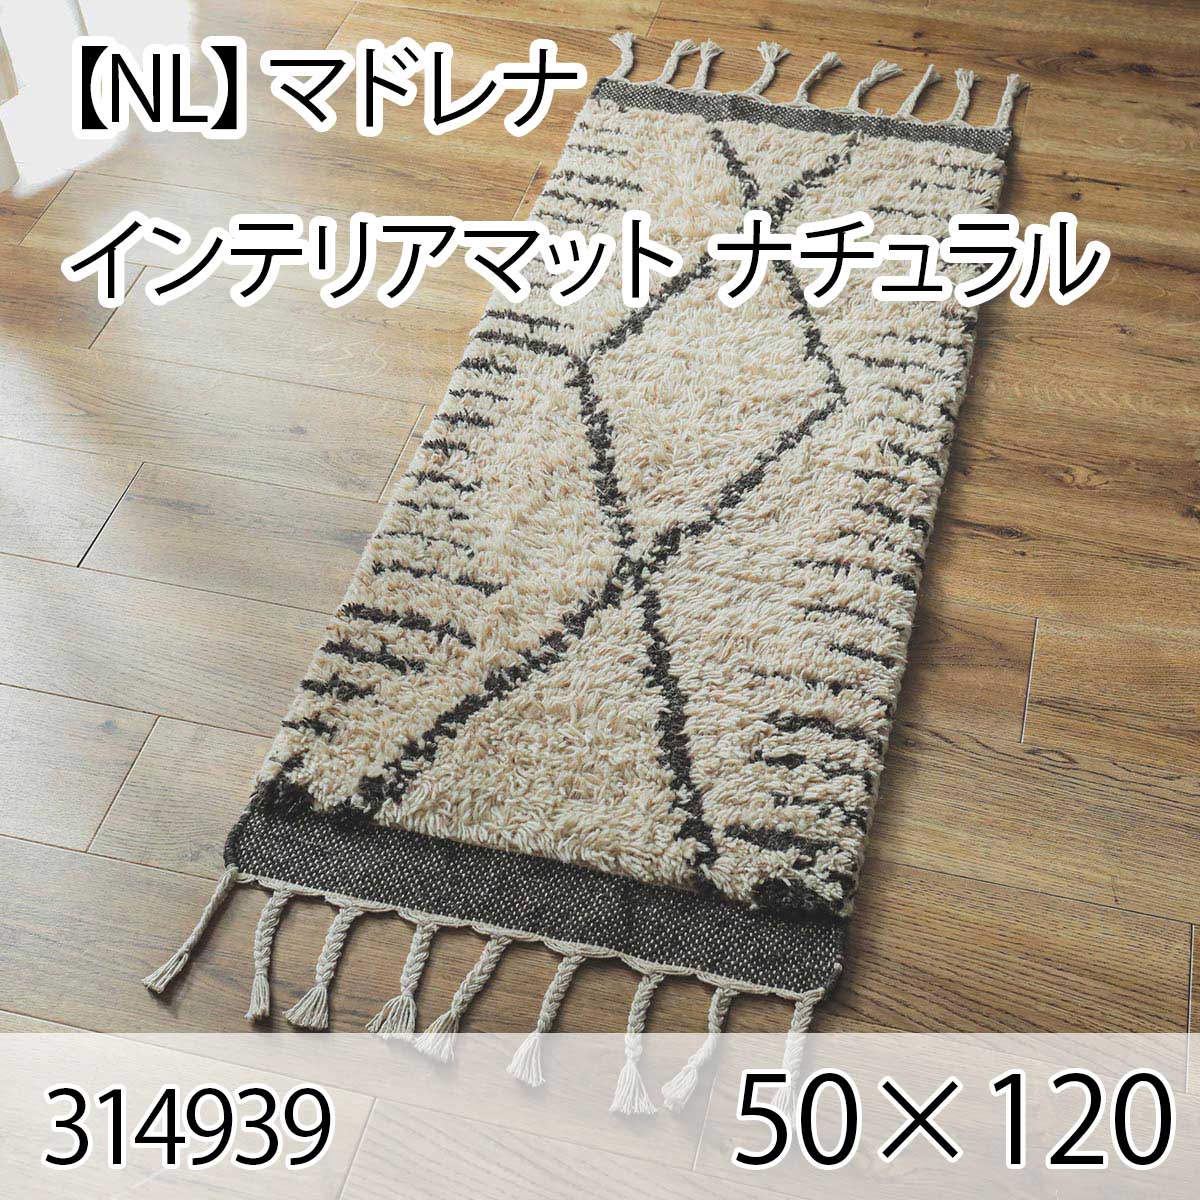 【NL】マドレナ インテリアマット 50cmx120cm ナチュラル